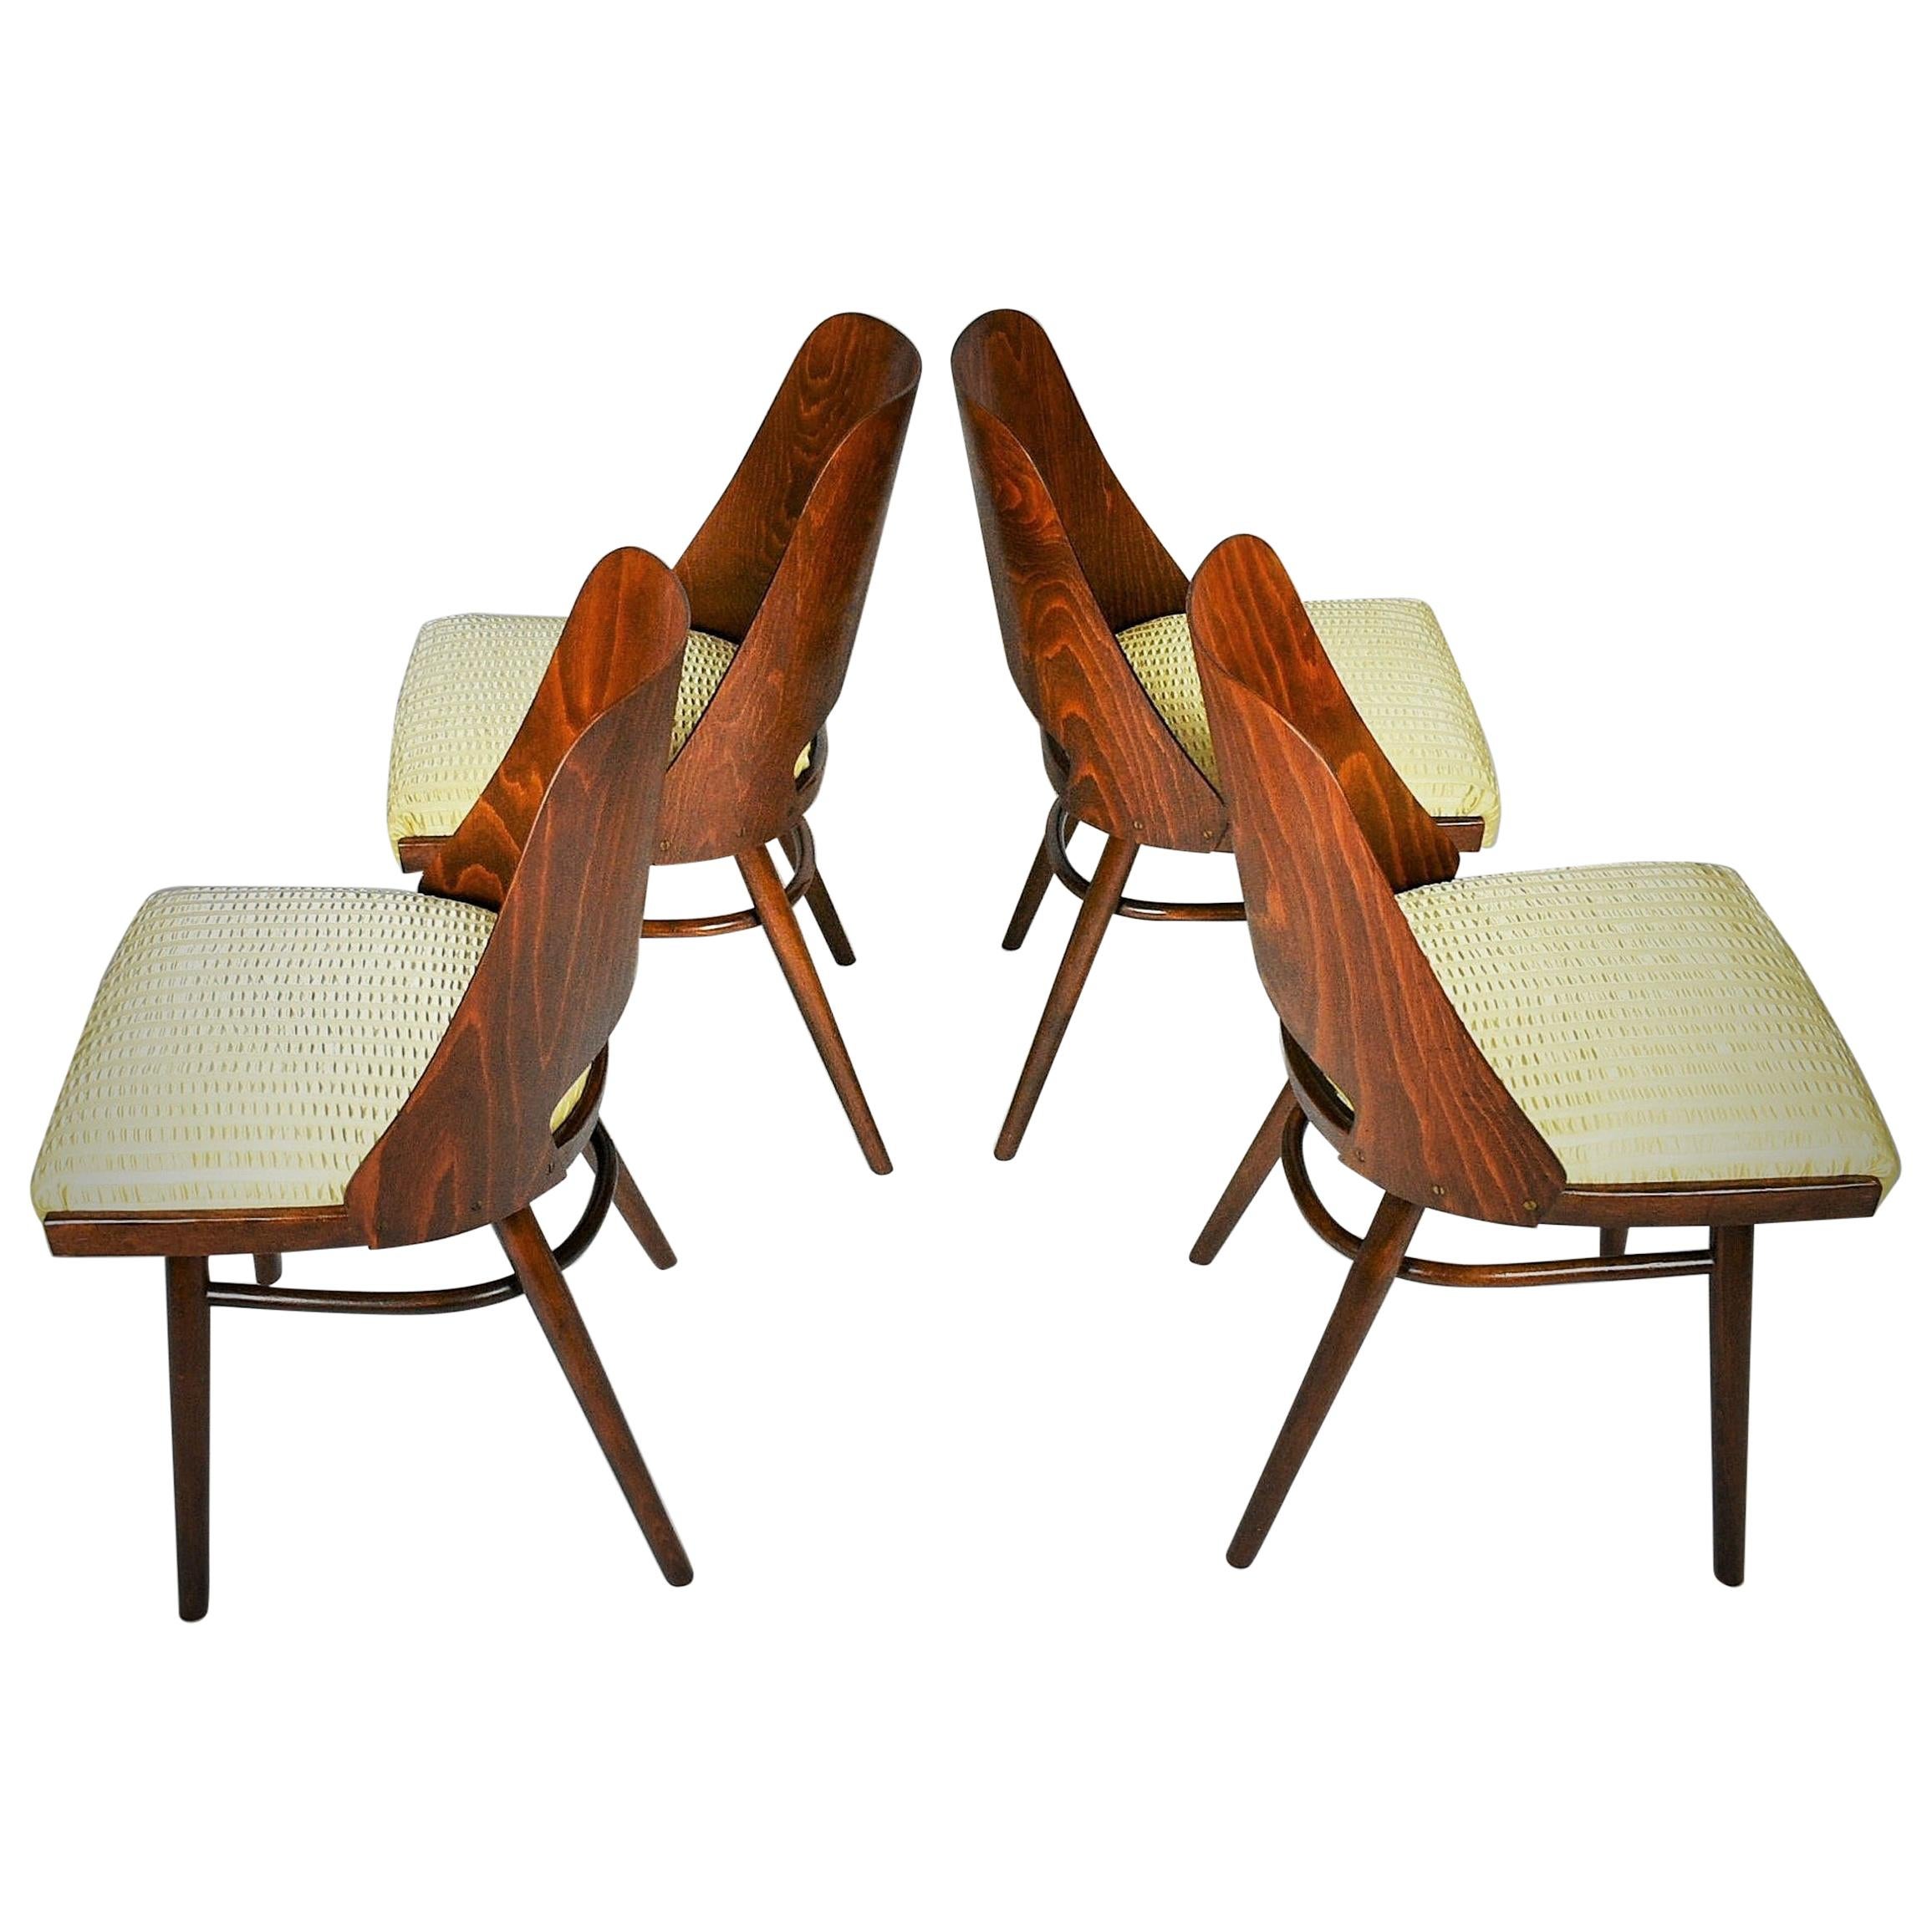 Set aus vier Esszimmerstühlen, Ton, entworfen von Oswald Haerdtl, 1950er Jahre, Expo 58